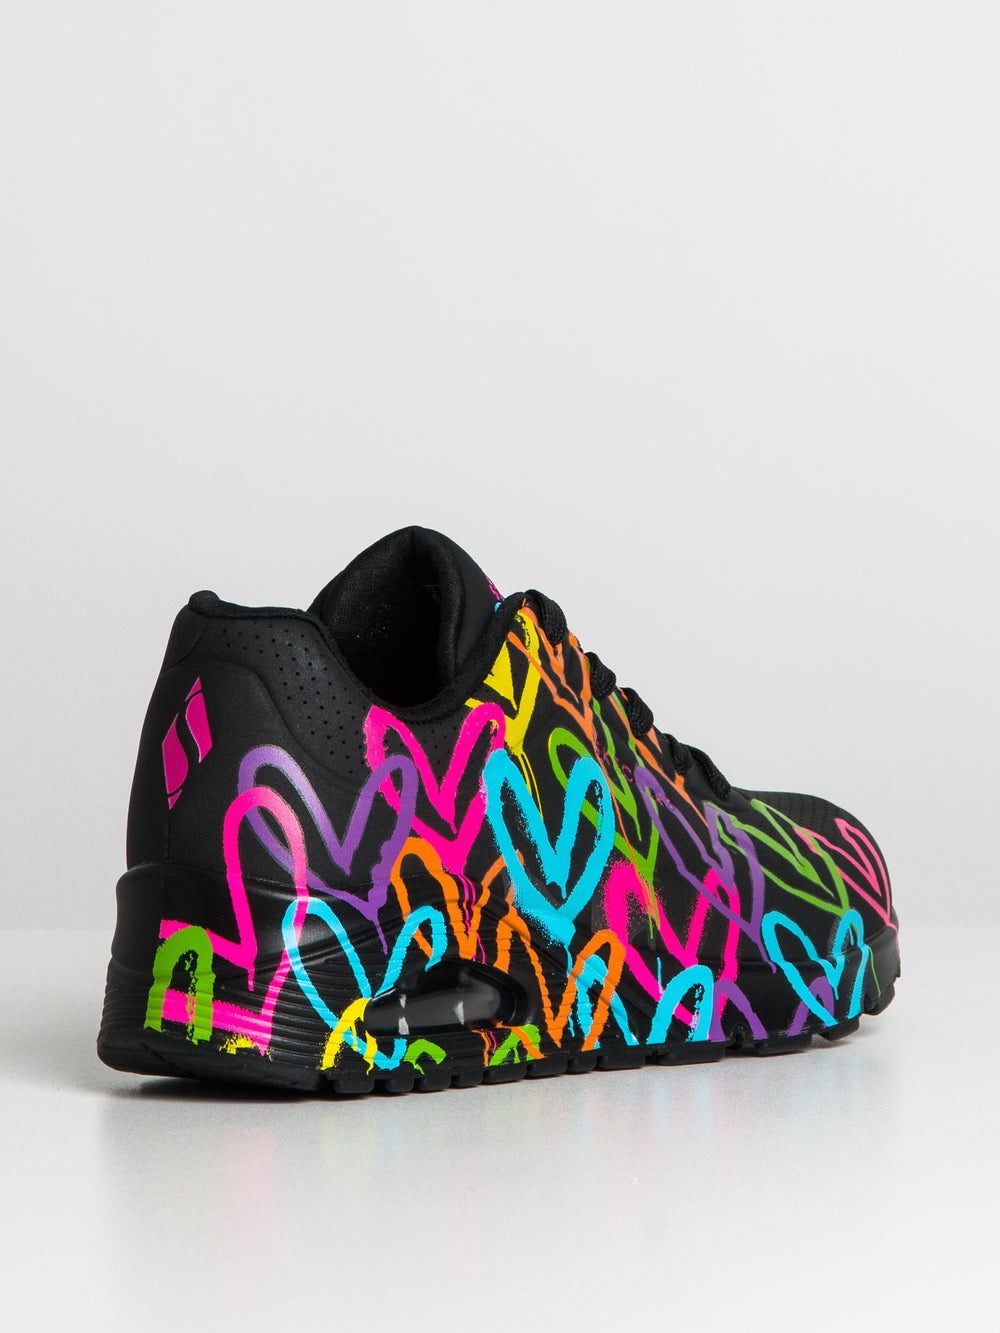 Skechers Art. UNO - METALLIC LOVE Sneakers in black, combined buy